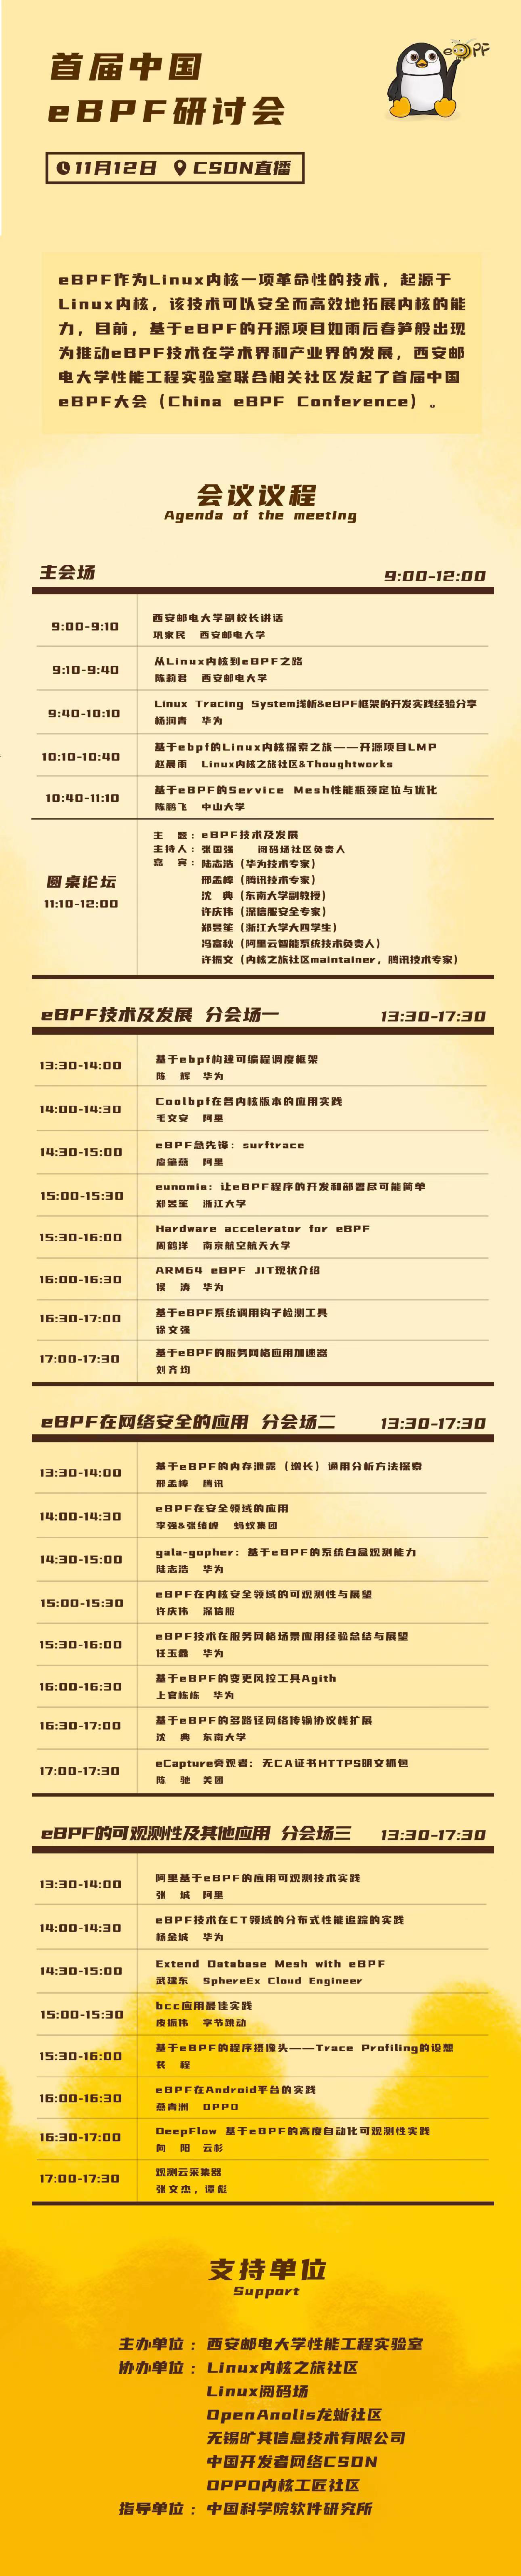 首届中国eBPF大会明天准时与大家见面，龙蜥多位技术专家参与演讲-鸿蒙开发者社区